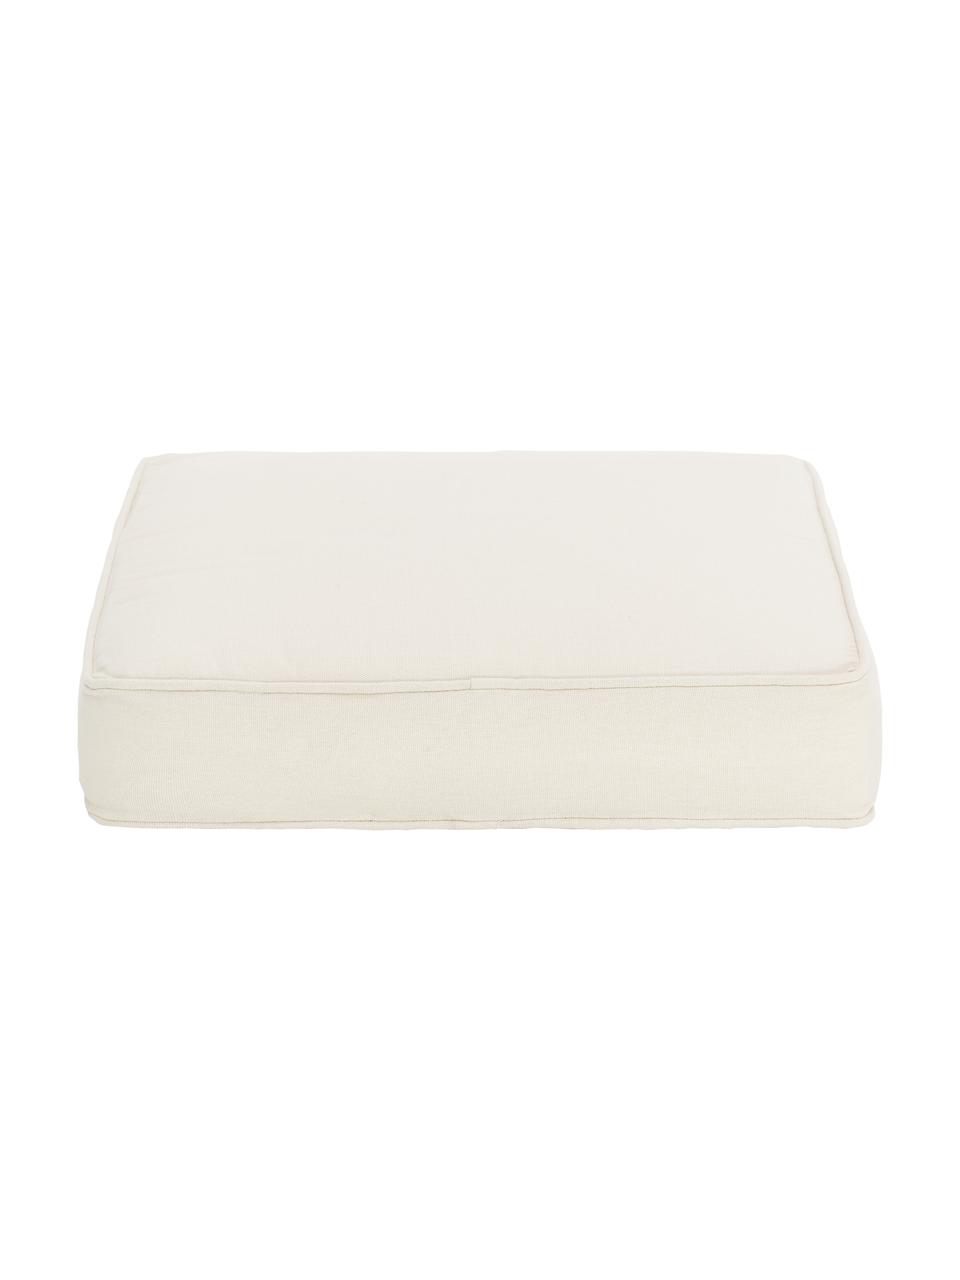 Cuscino sedia alto in cotone beige Zoey, Rivestimento: 100% cotone, Beige, Larg. 40 x Lung. 40 cm